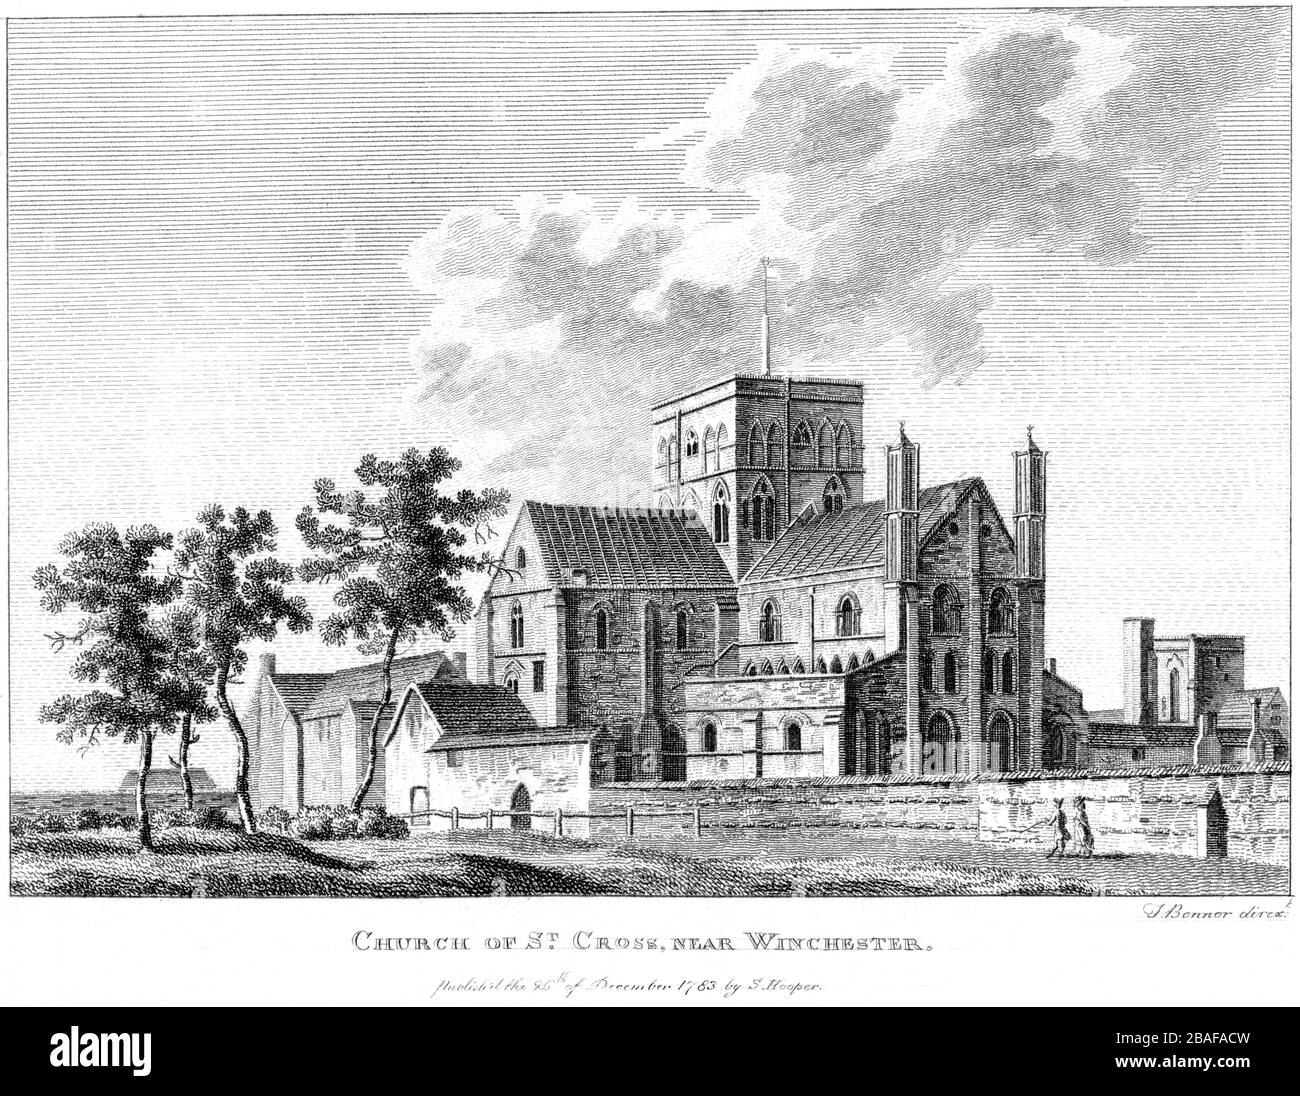 Eine Gravur der Church of St Cross in der Nähe von Winchester 1783 gescannt in hoher Auflösung aus einem Buch, das um das Jahr 1786 veröffentlicht wurde. Ich glaube, dass das Urheberrecht frei ist. Stockfoto